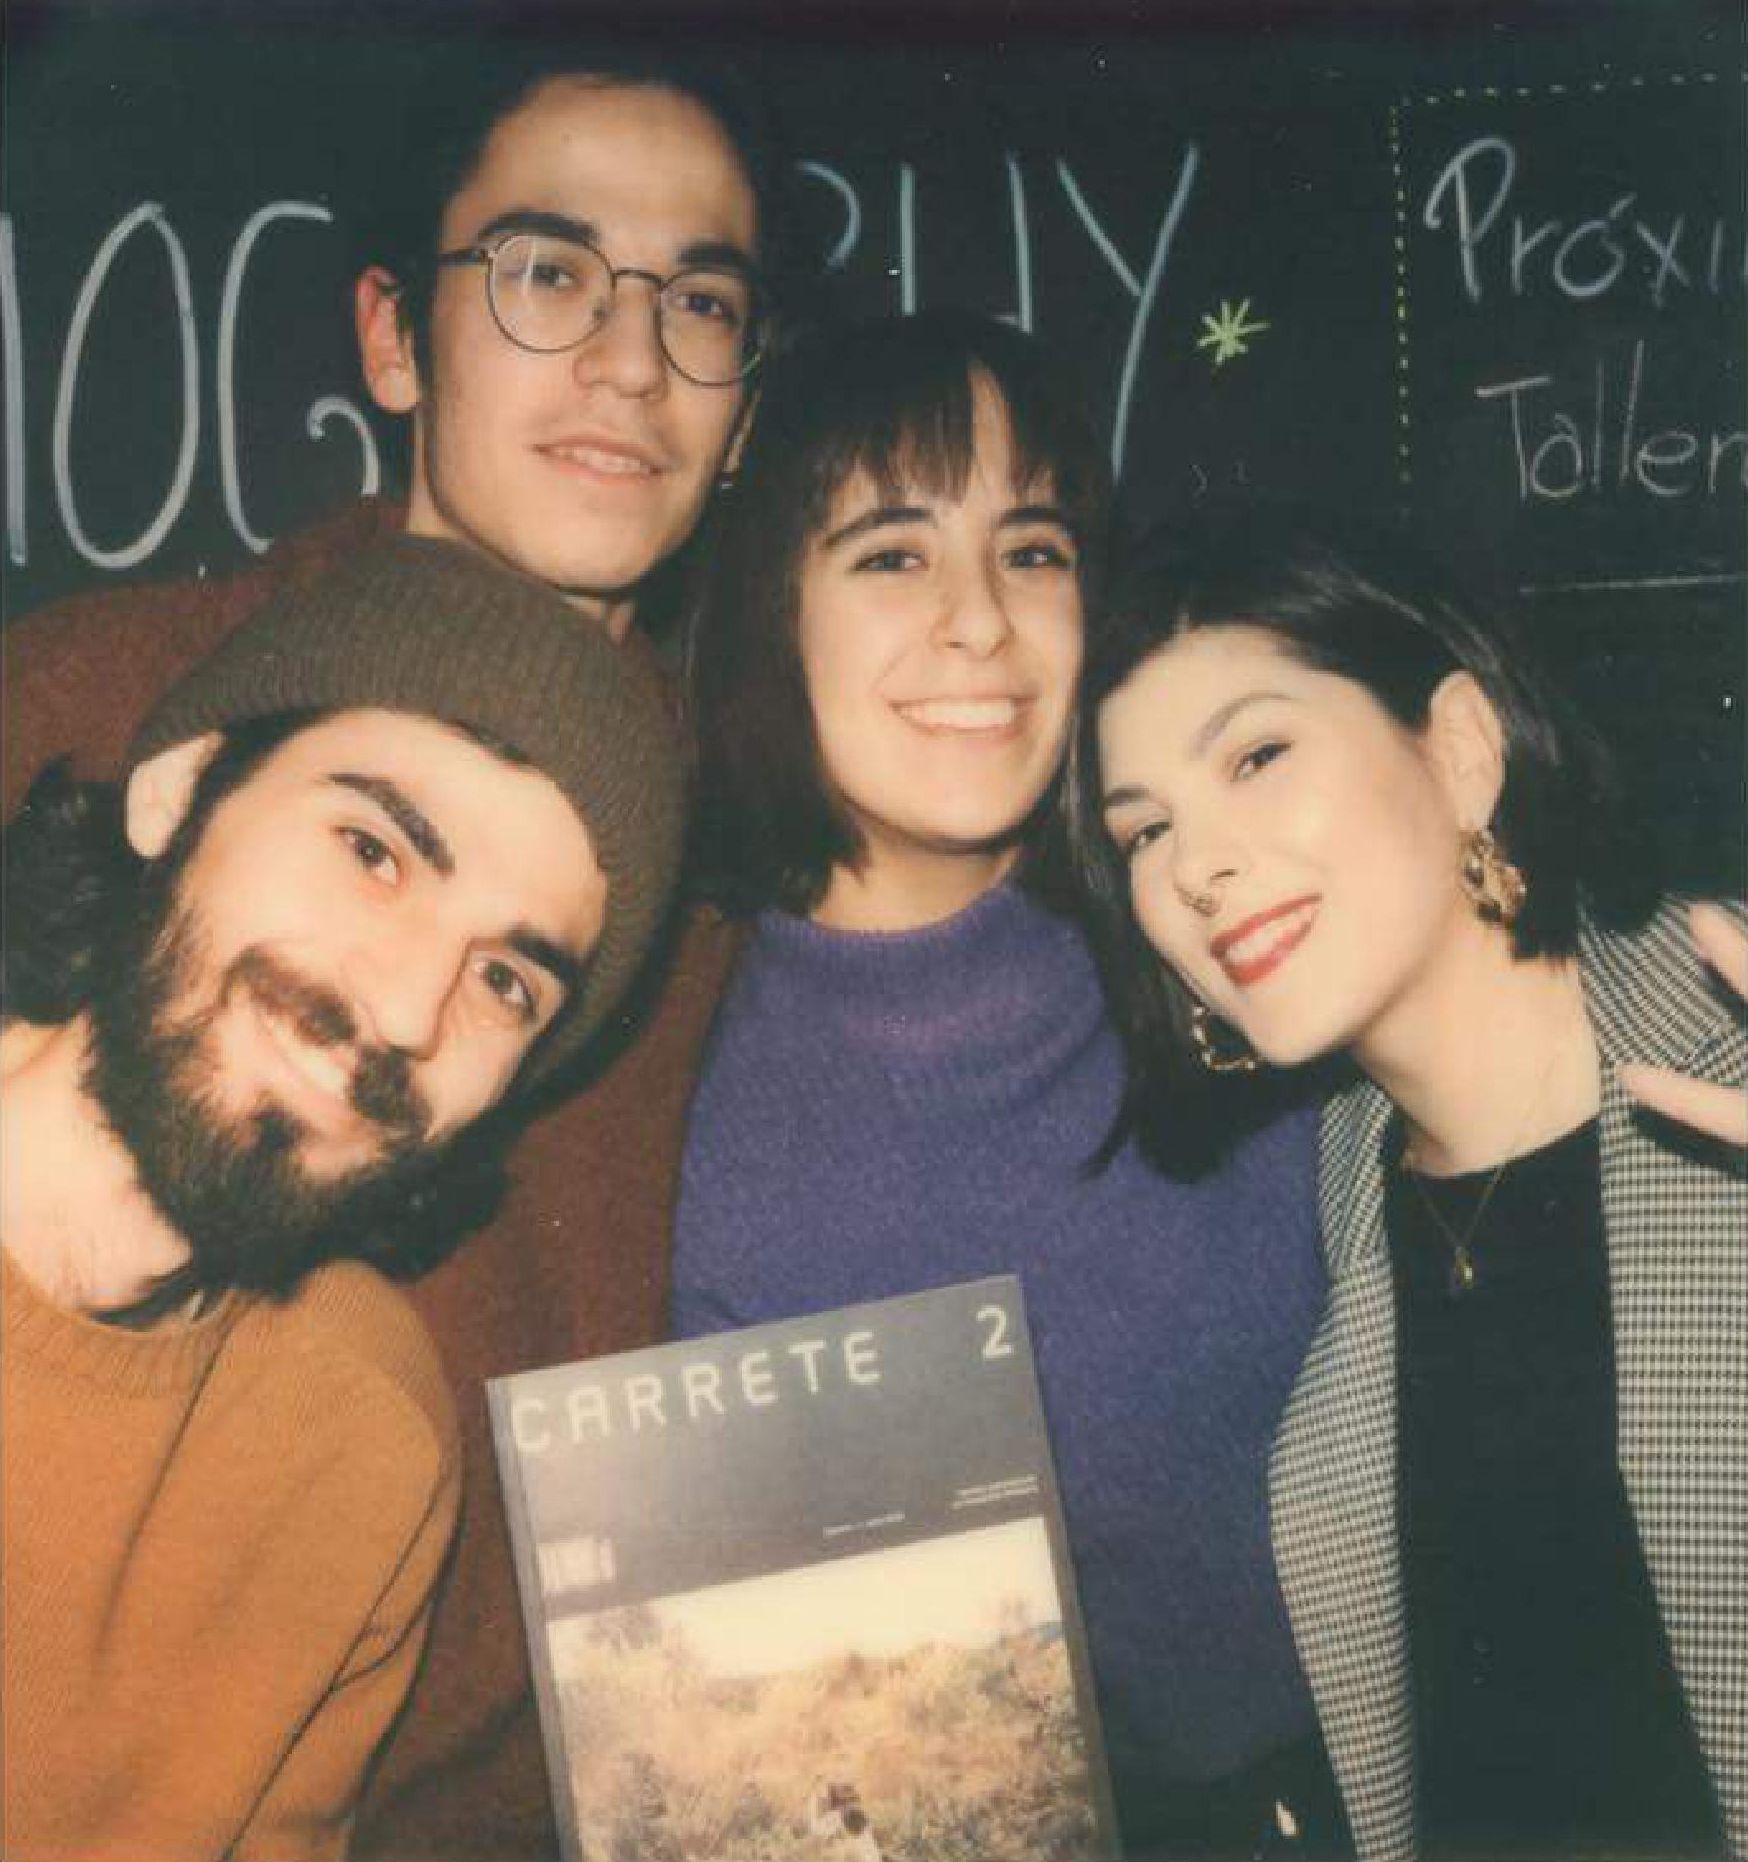 El grup impulsor de Carrete. Retrat en Polaroid per Joaquin de Prada.